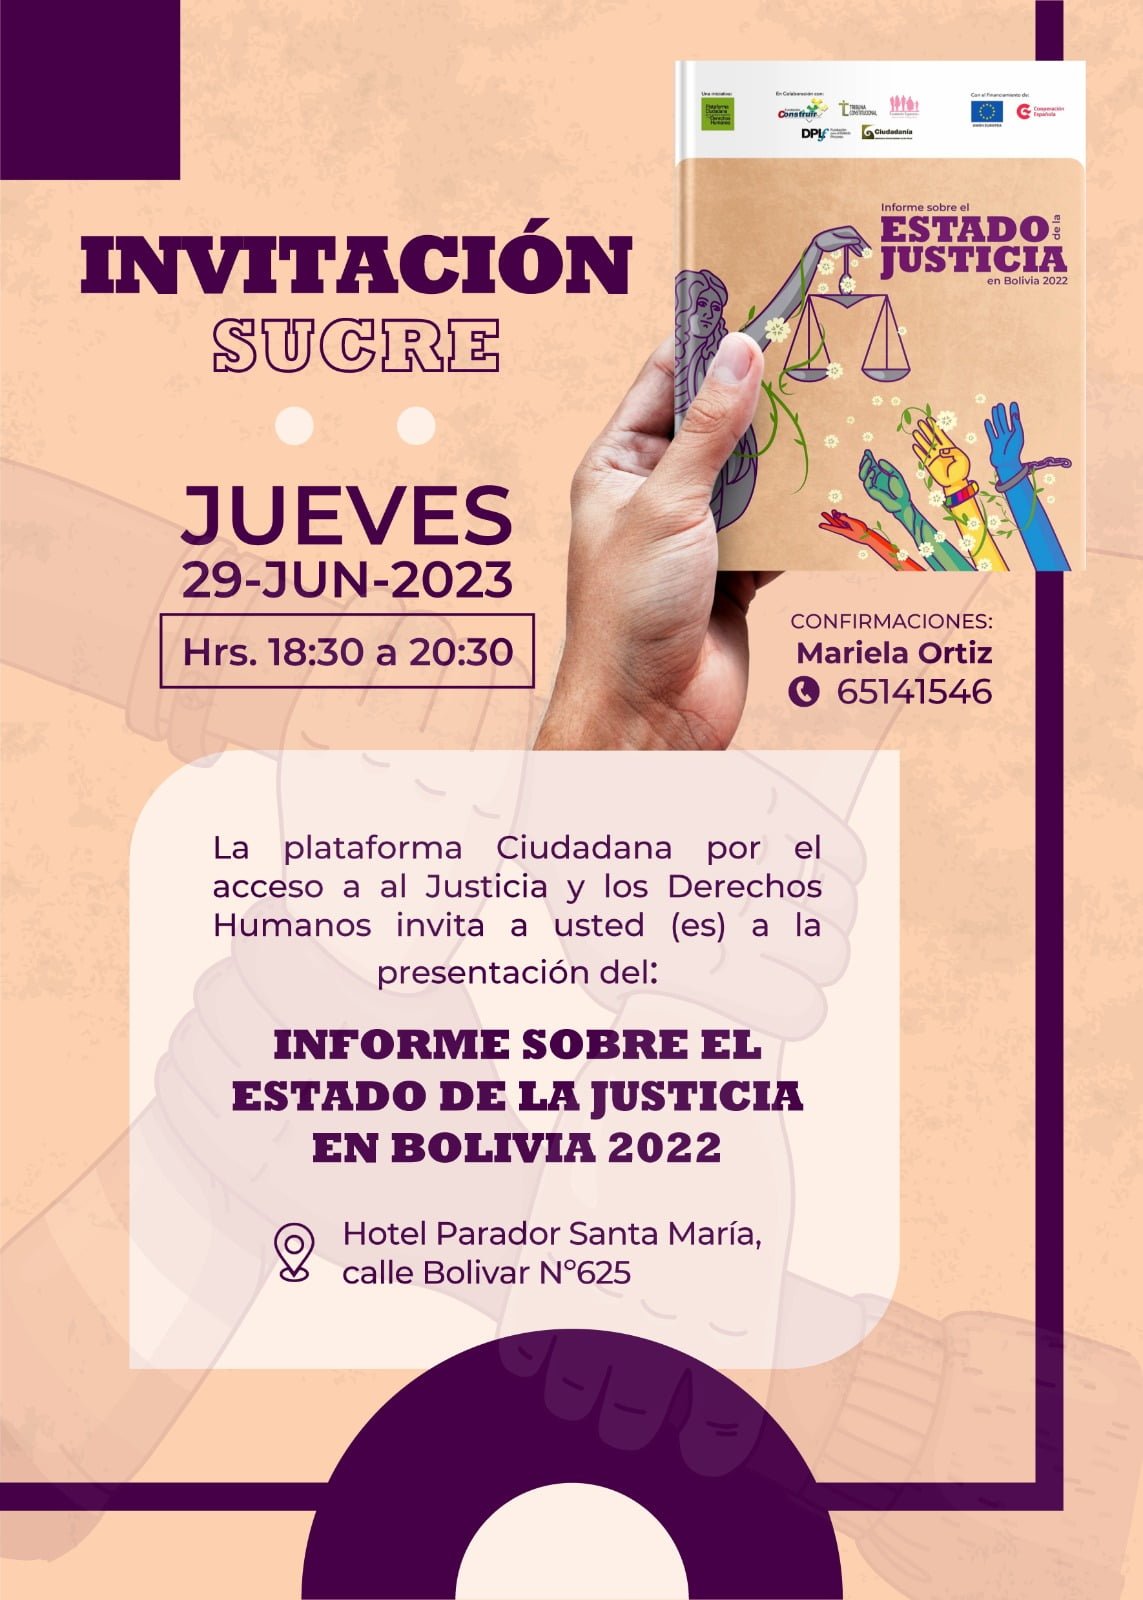 Invitación-Sucre:Estado de la Justicia en Bolivia 2022